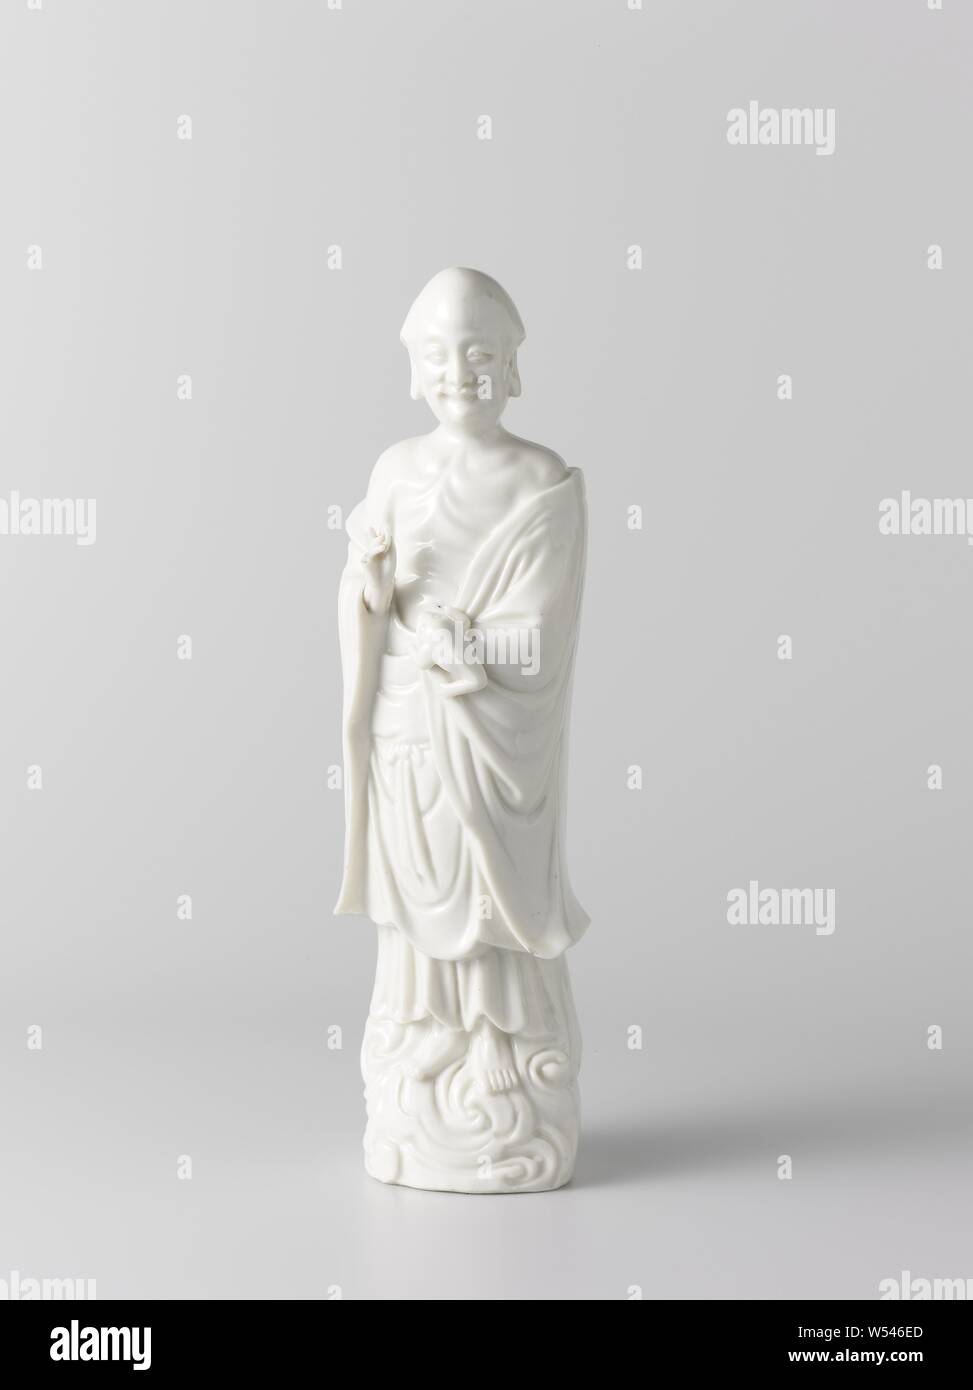 L'immortale Liu Hai la figura dell'immortale taoista Liu Hai con tripiede di rospo e moneta in oro. L'immagine rappresenta Liu Hai, un immortale Taoista, con il suo attributo il tripiede di rospo e una moneta in oro, egli è vestito con un abito aperto e si erge su un piedistallo a forma di nuvola. Alcune crepe di cottura, un dito è rotto. Blanc De Chine., anonimo, Cina, c. 1700 - c. 1724, Qing-dinastia (1644-1912) / Kangxi-periodo (1662-1722) / Yongzheng-periodo (1723-1735), porcellana (materiale), smalto, vetrificazione, h 35,5 cm l 10,5 cm × W 8 cm l 8.4 cm × W 7.3 cm Foto Stock